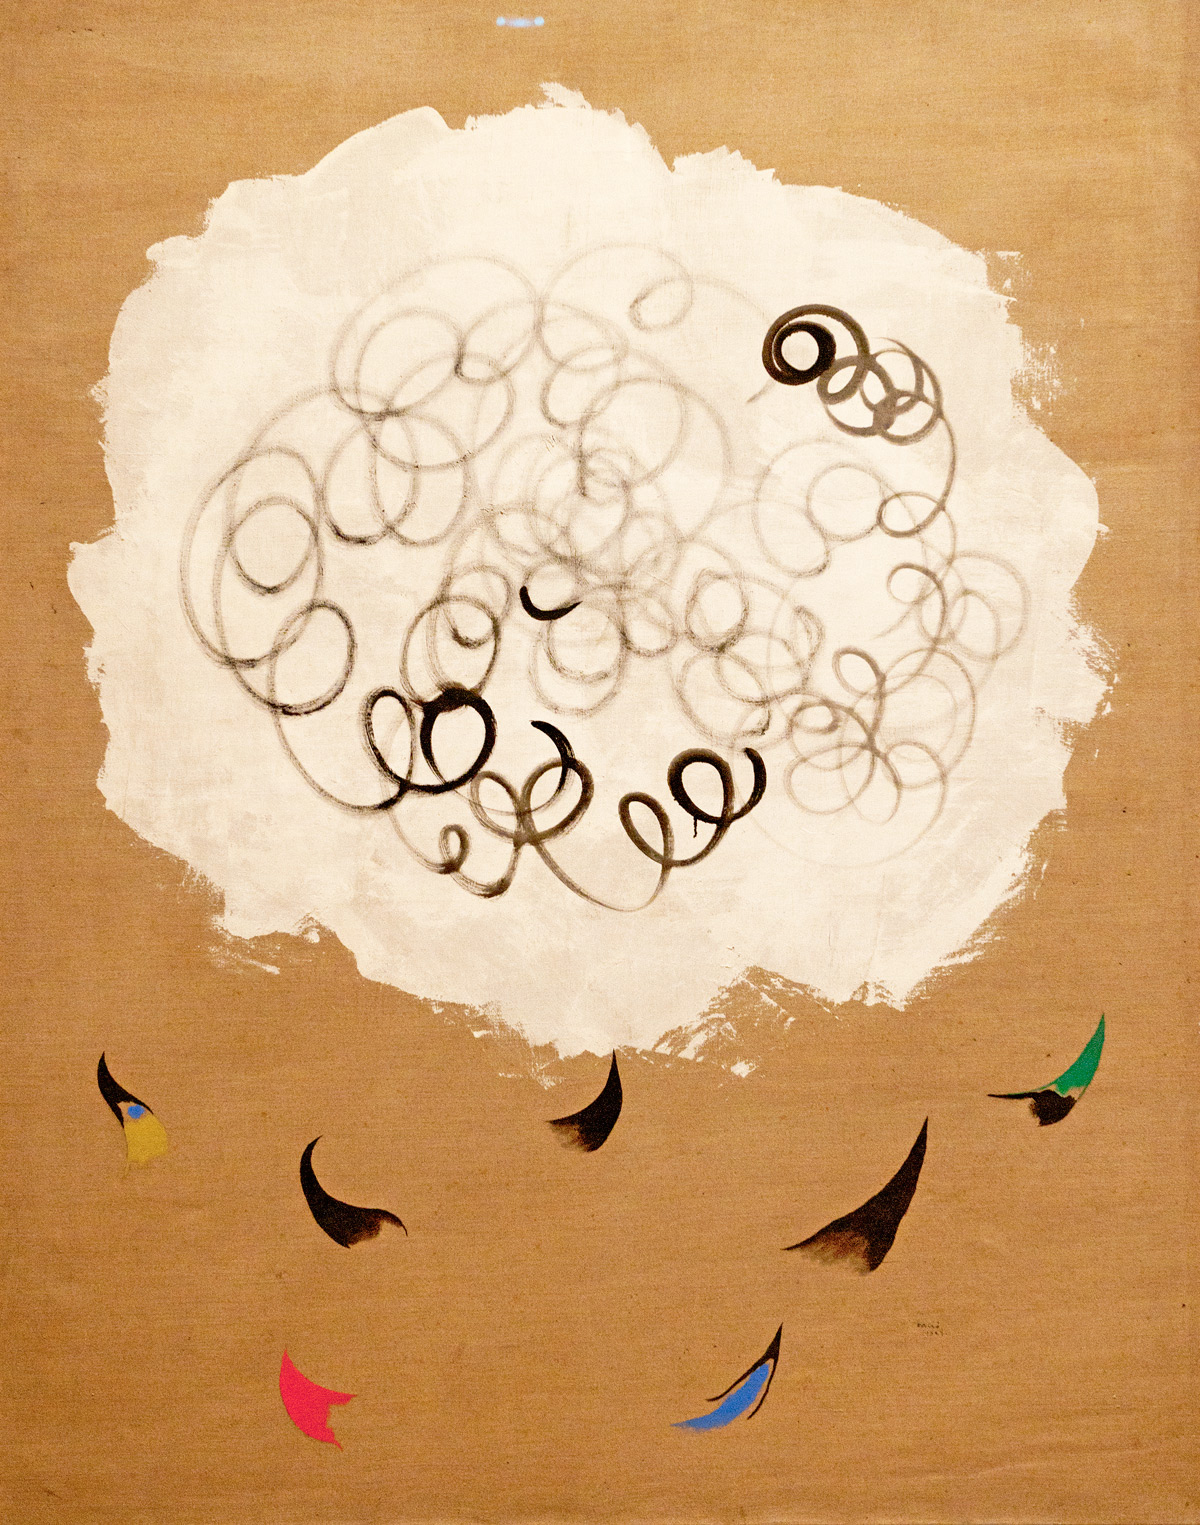 28.12.2013 Nuage et Oiseaux (Cloud and Birds) 1927 Joan Miró, Spanish, 1893–1983